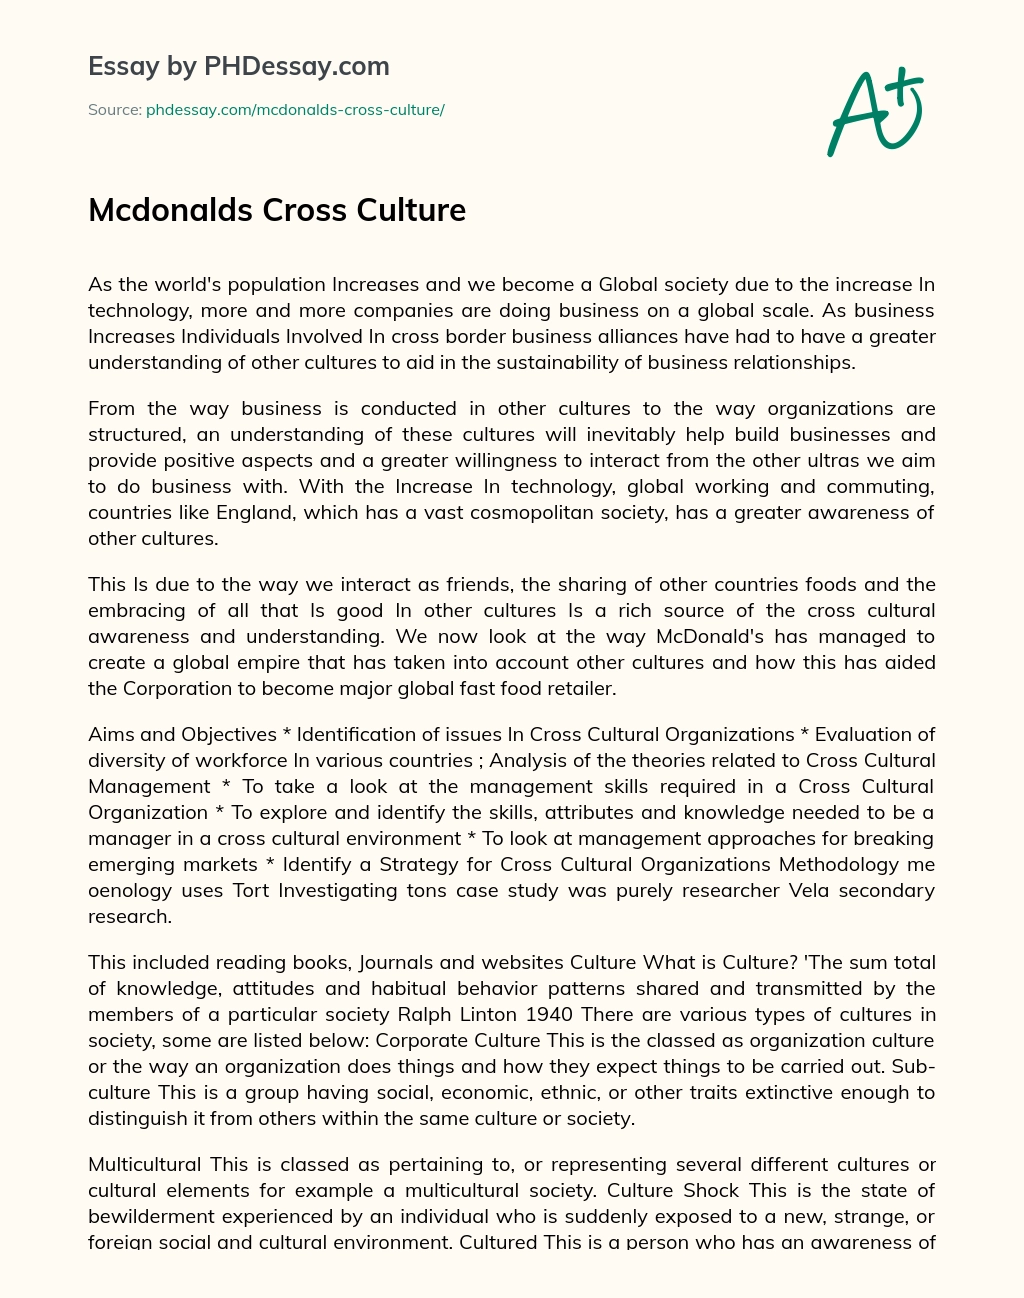 Mcdonalds Cross Culture essay